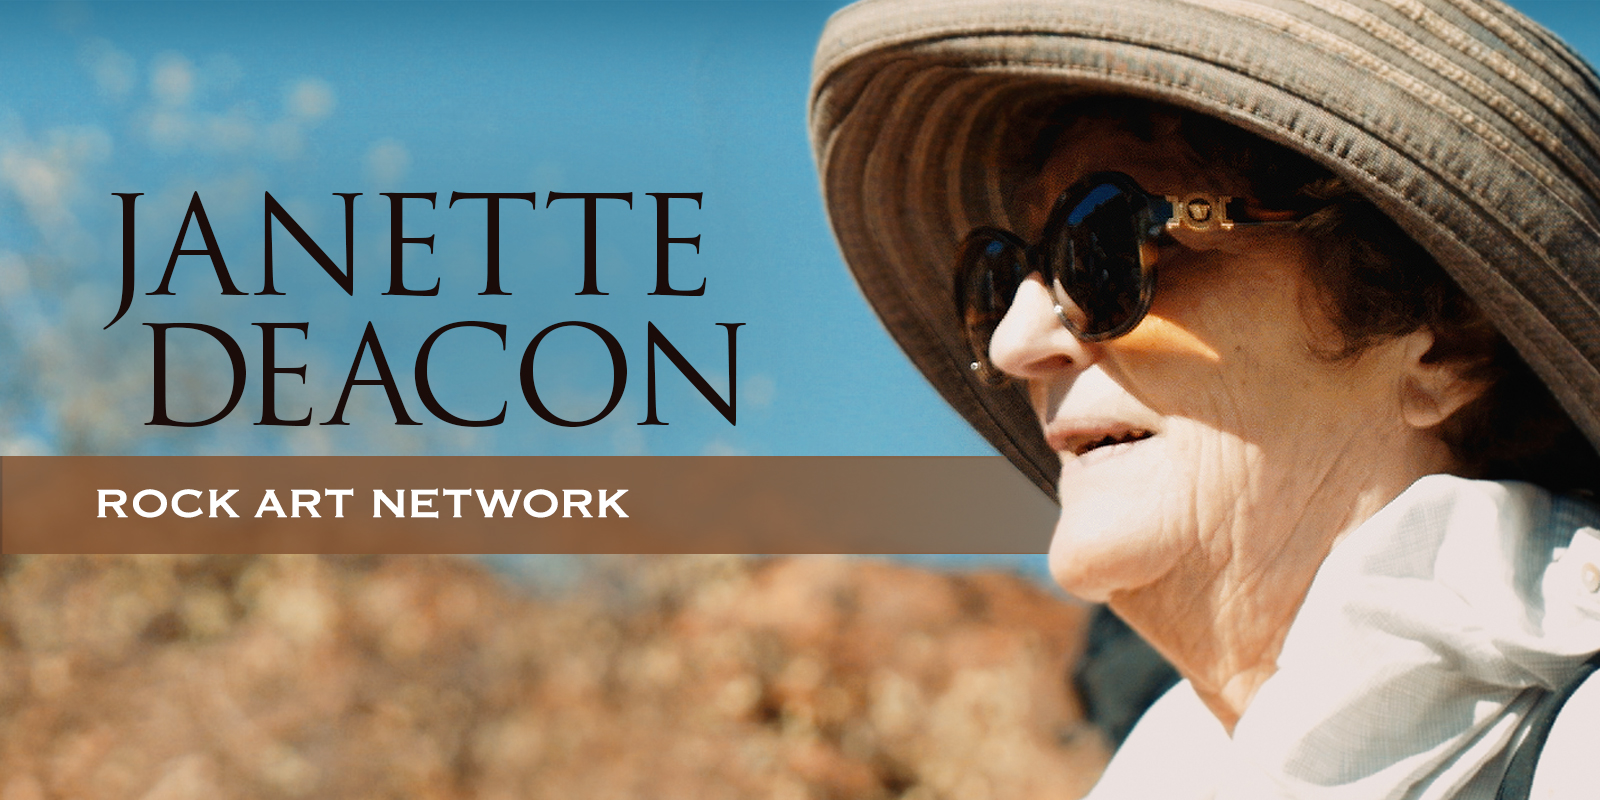 The Rock Art Network Janette Deacon